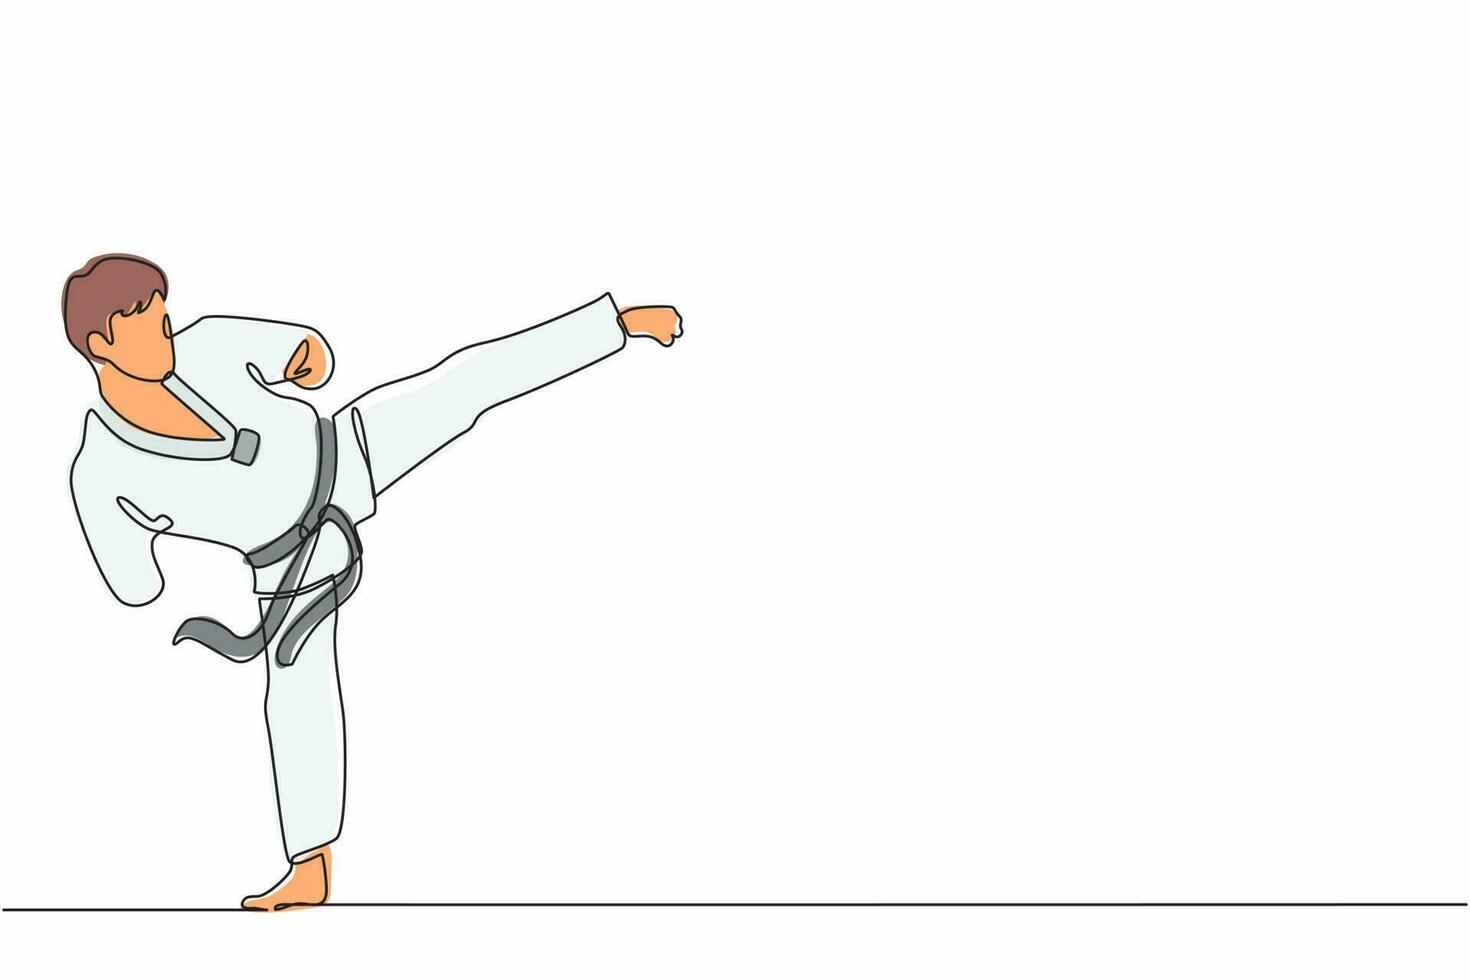 dessin en ligne continue d'un athlète masculin handicapé pratiquant le taekwondo. sportif faisant des coups de pied pose dans un tournoi sportif. dynamique une ligne dessiner illustration vectorielle de conception graphique vecteur